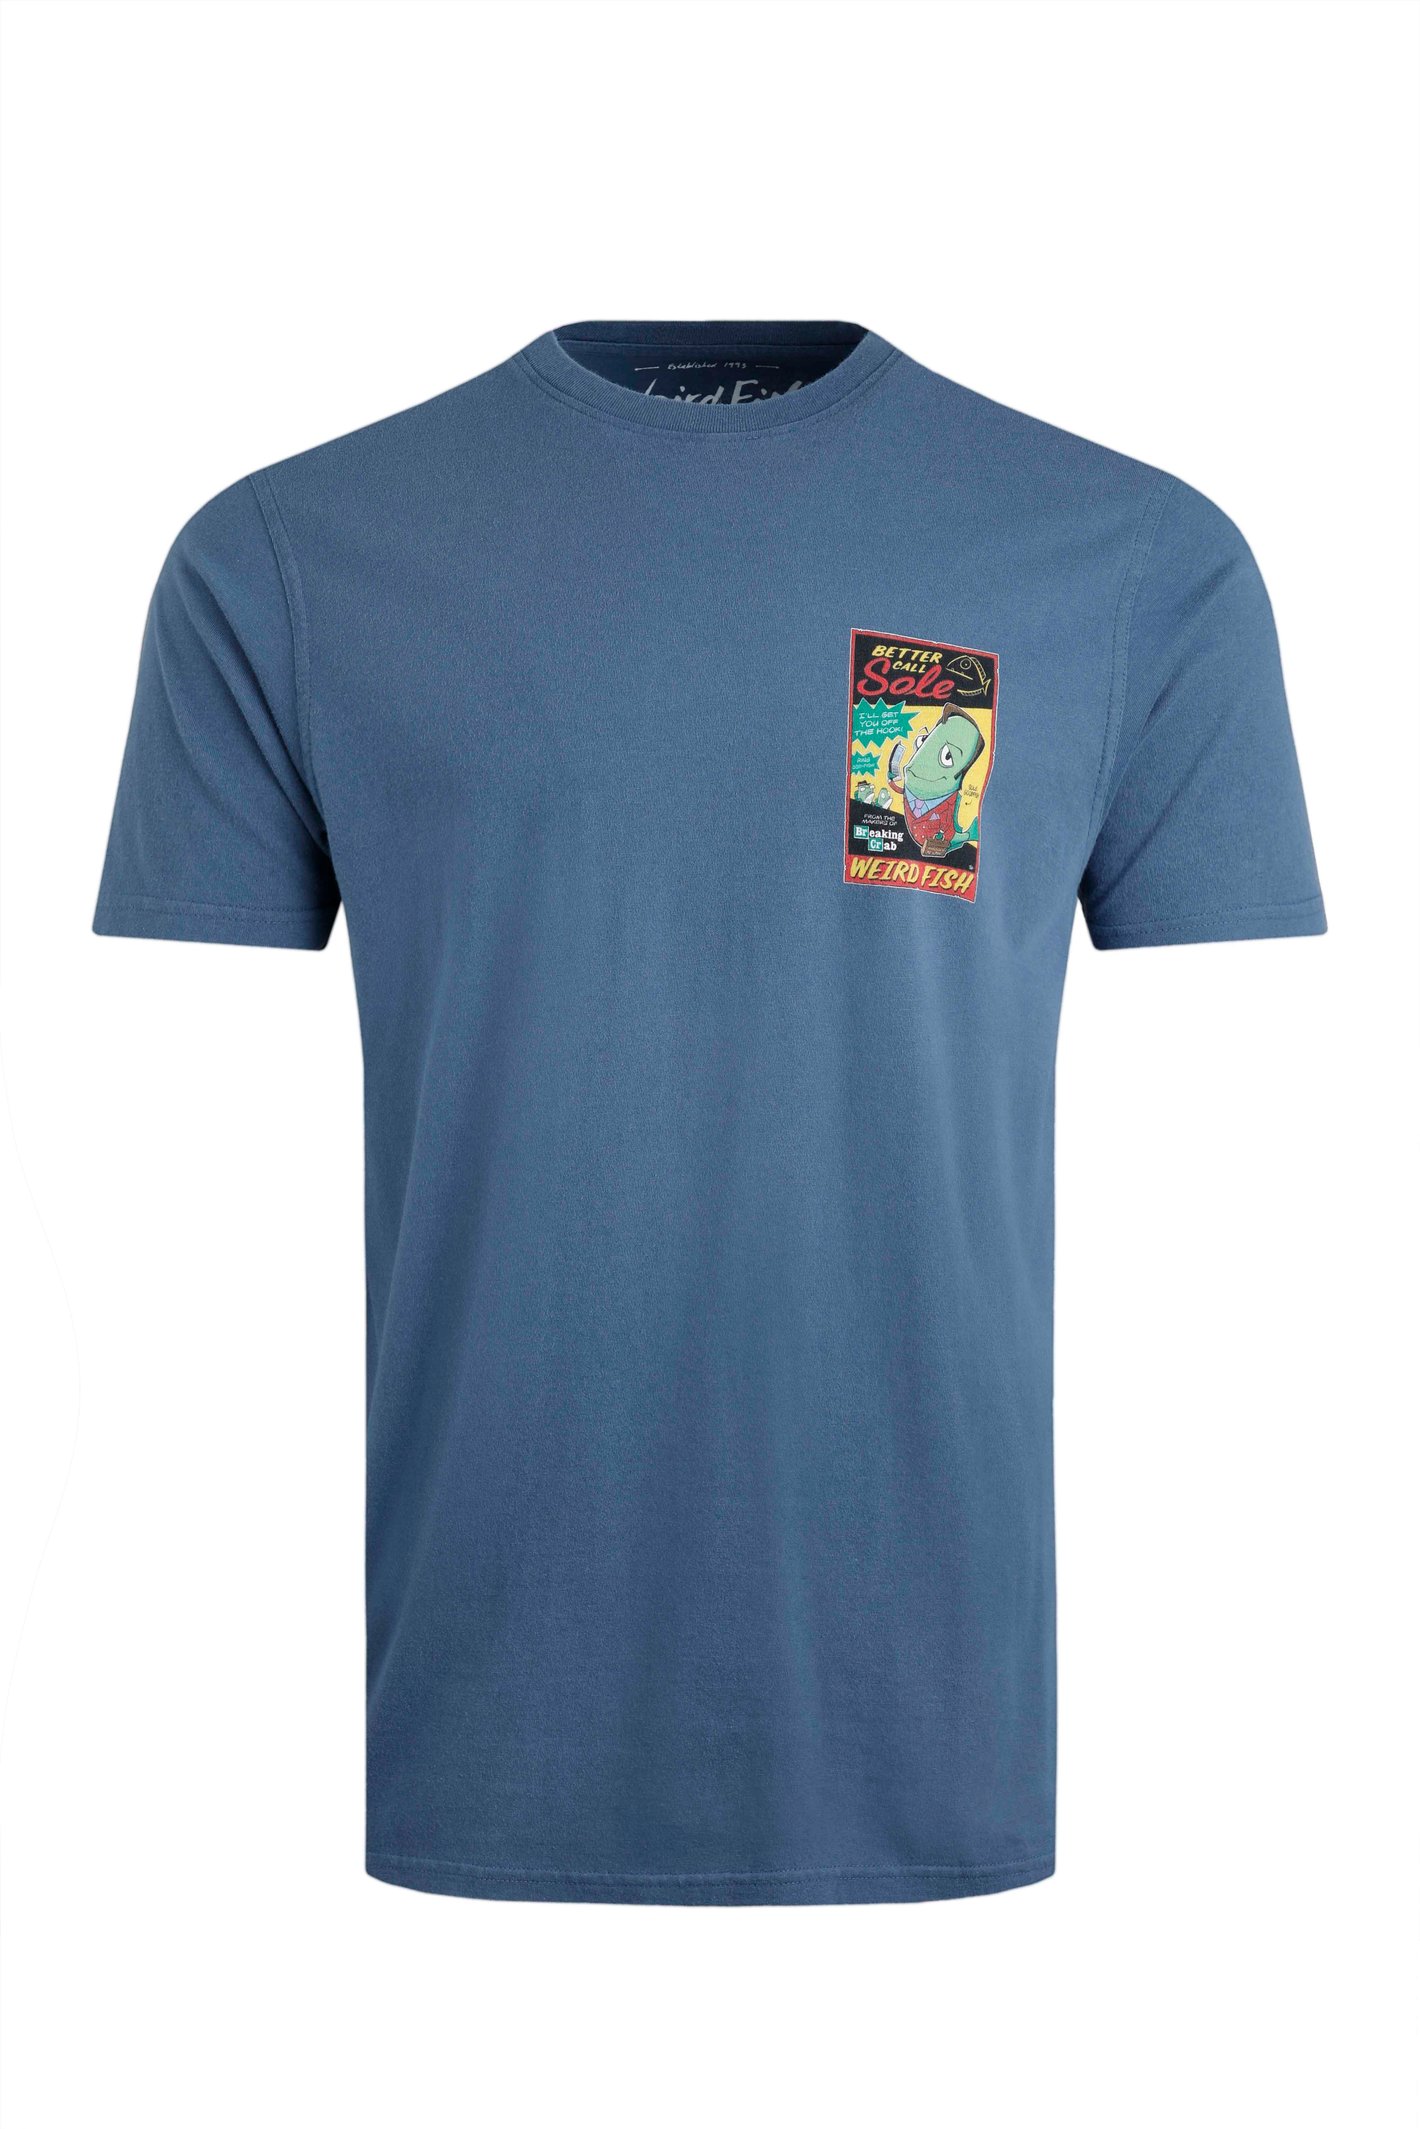 Weird Fish Call Sole Artist T-Shirt Ensign Blue Size 5XL